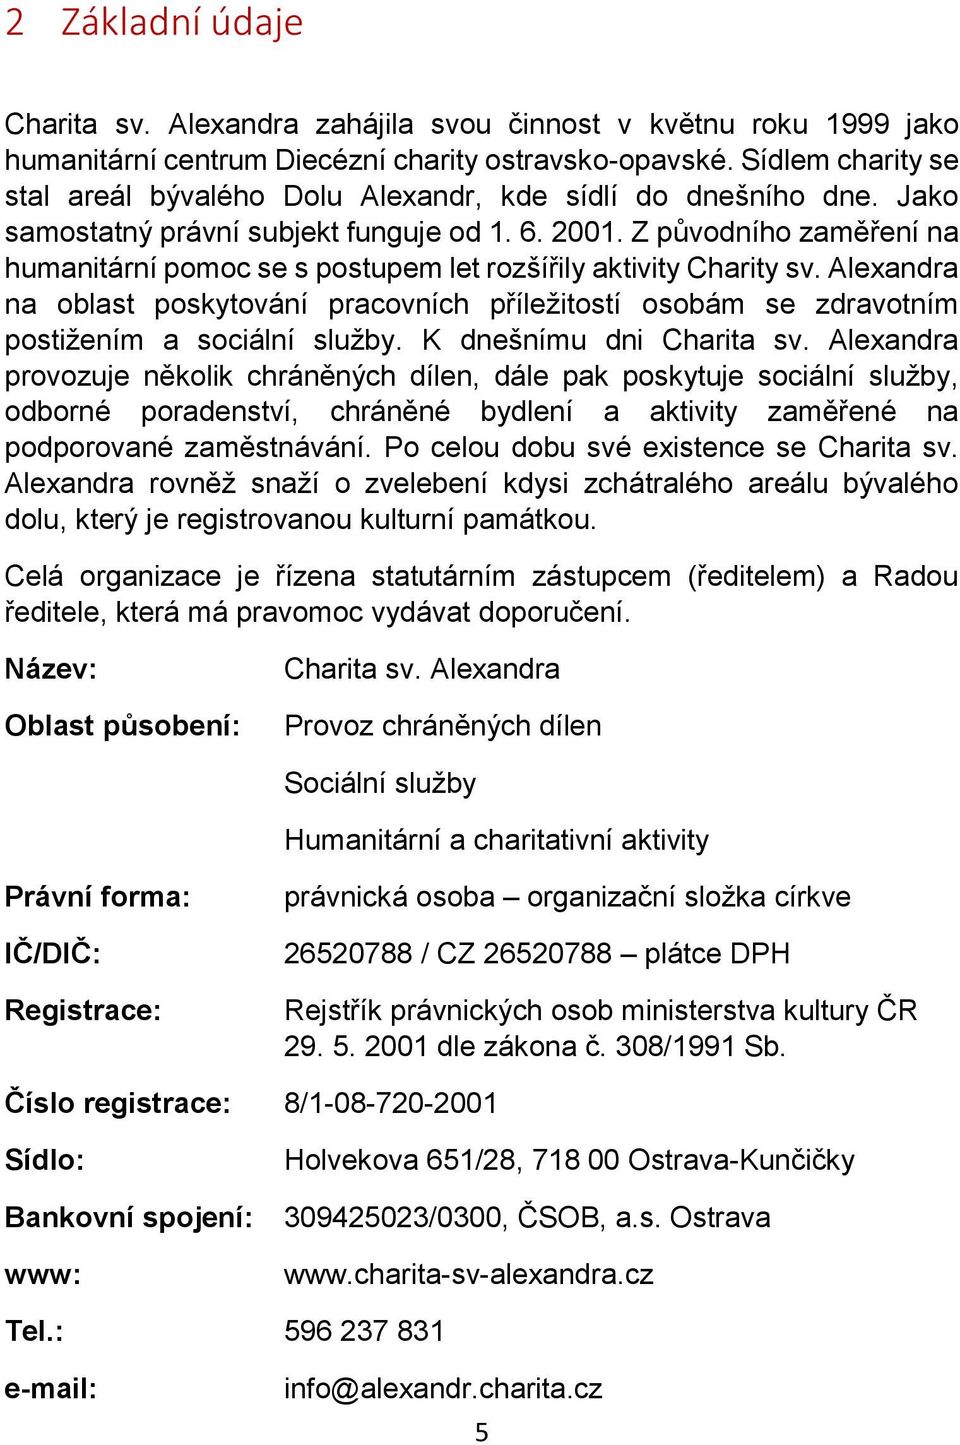 Z původního zaměření na humanitární pomoc se s postupem let rozšířily aktivity Charity sv. Alexandra na oblast poskytování pracovních příležitostí osobám se zdravotním postižením a sociální služby.